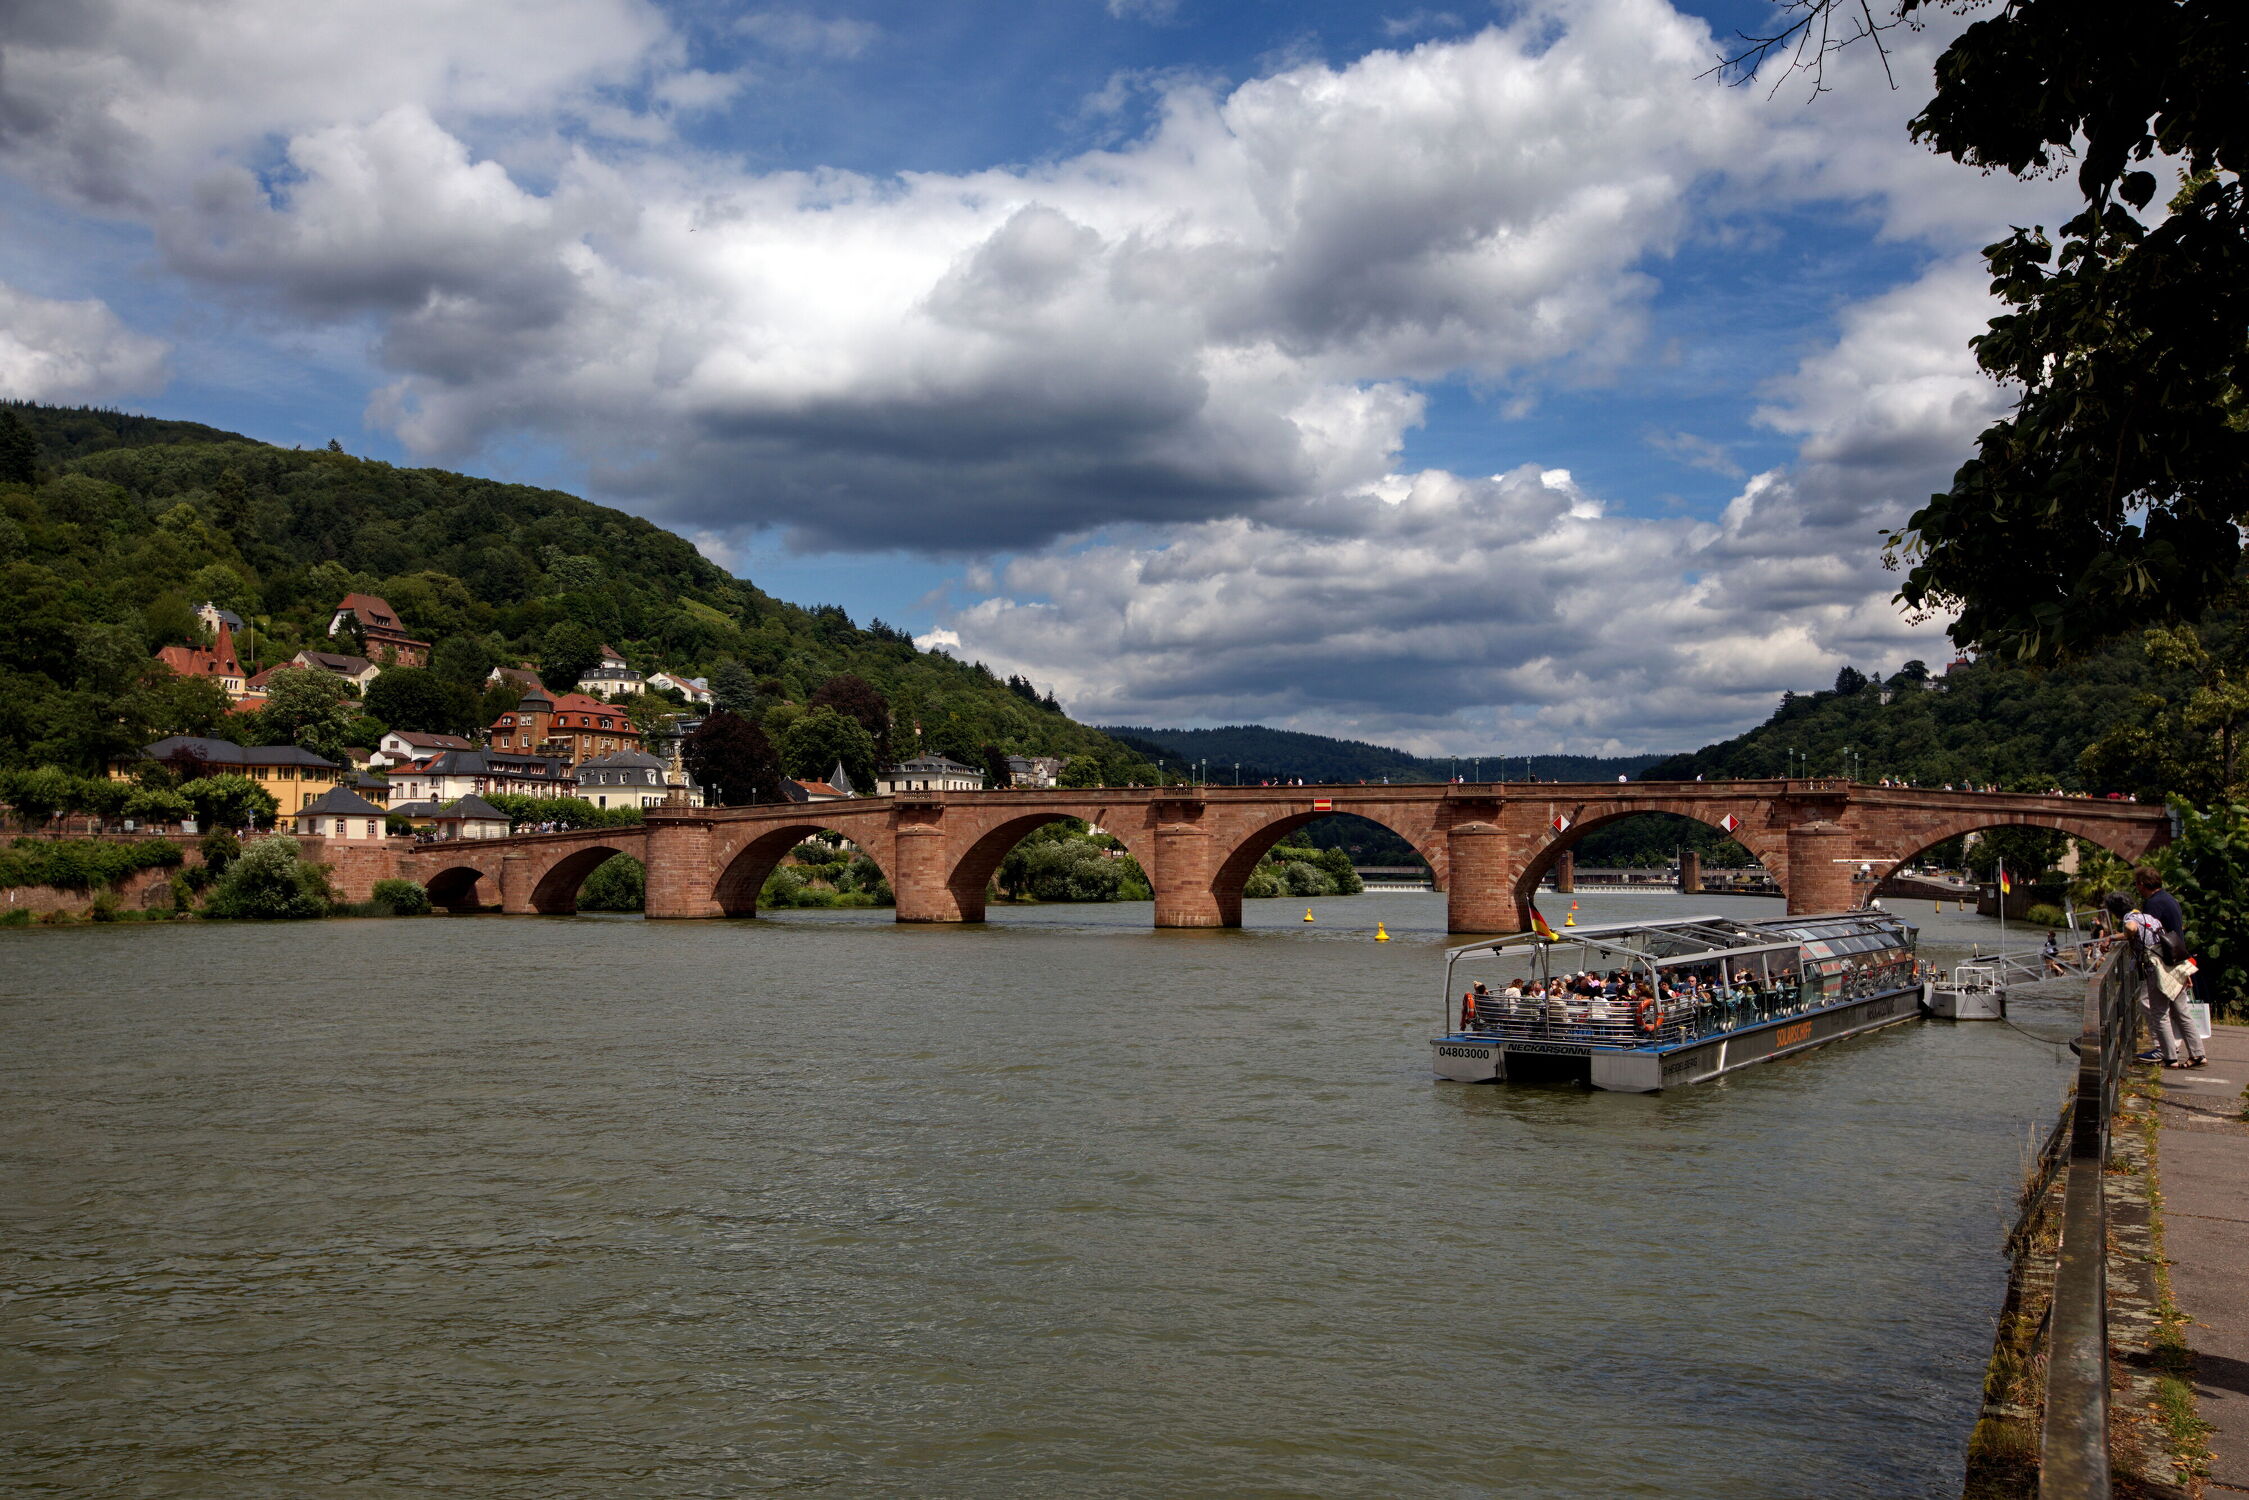 Bild mit boot, Brücke, Historisch, Fluss, Neckarfluss